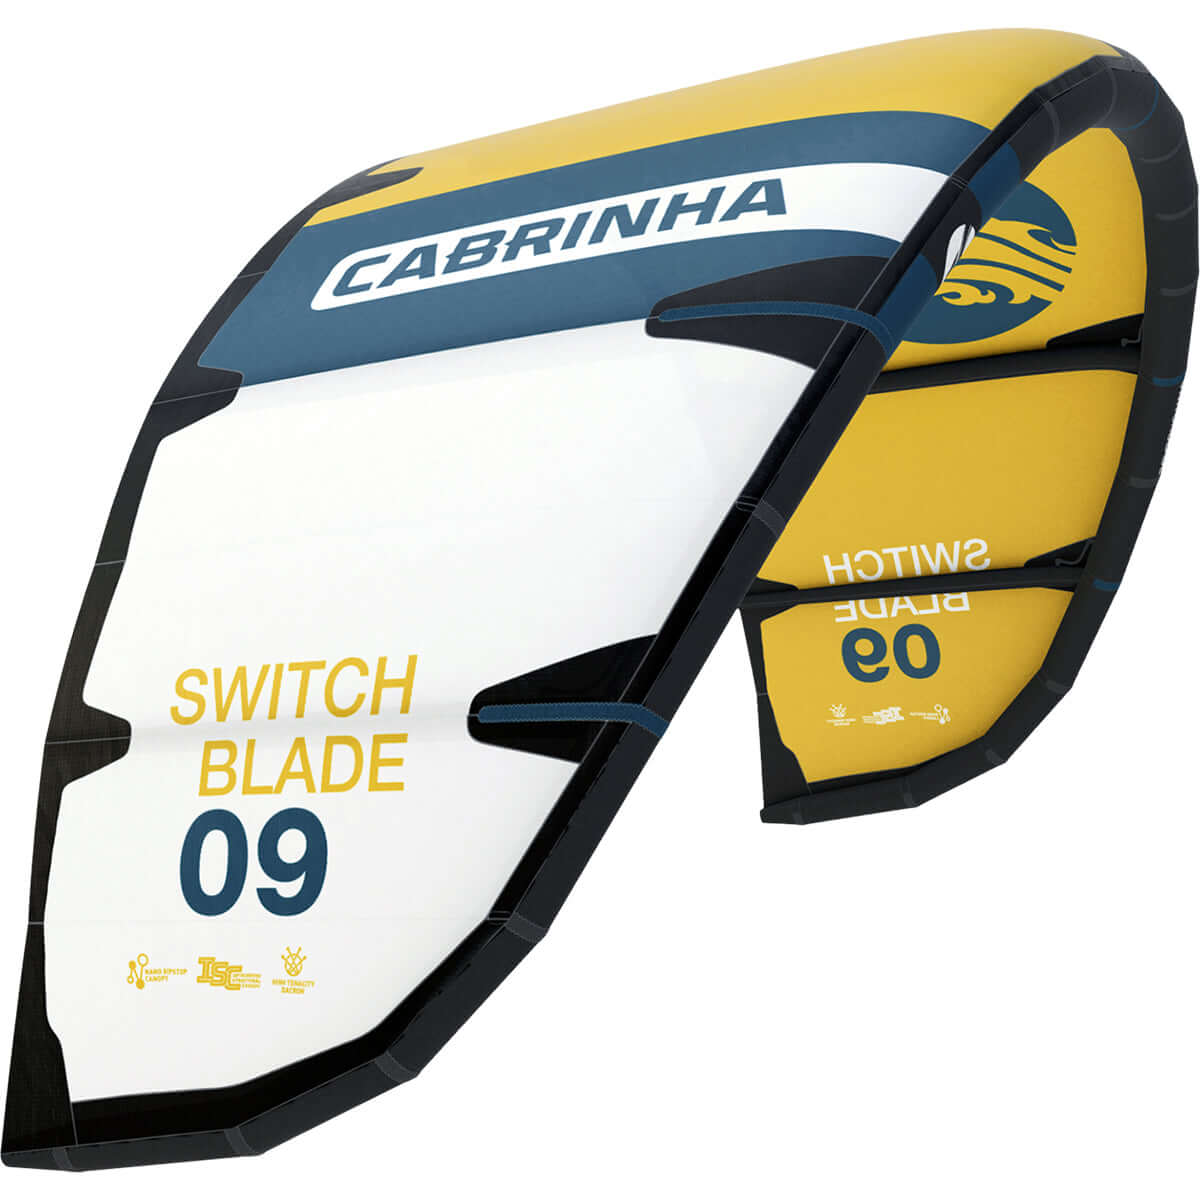 Cabrinha 24 Switchblade only – Kite